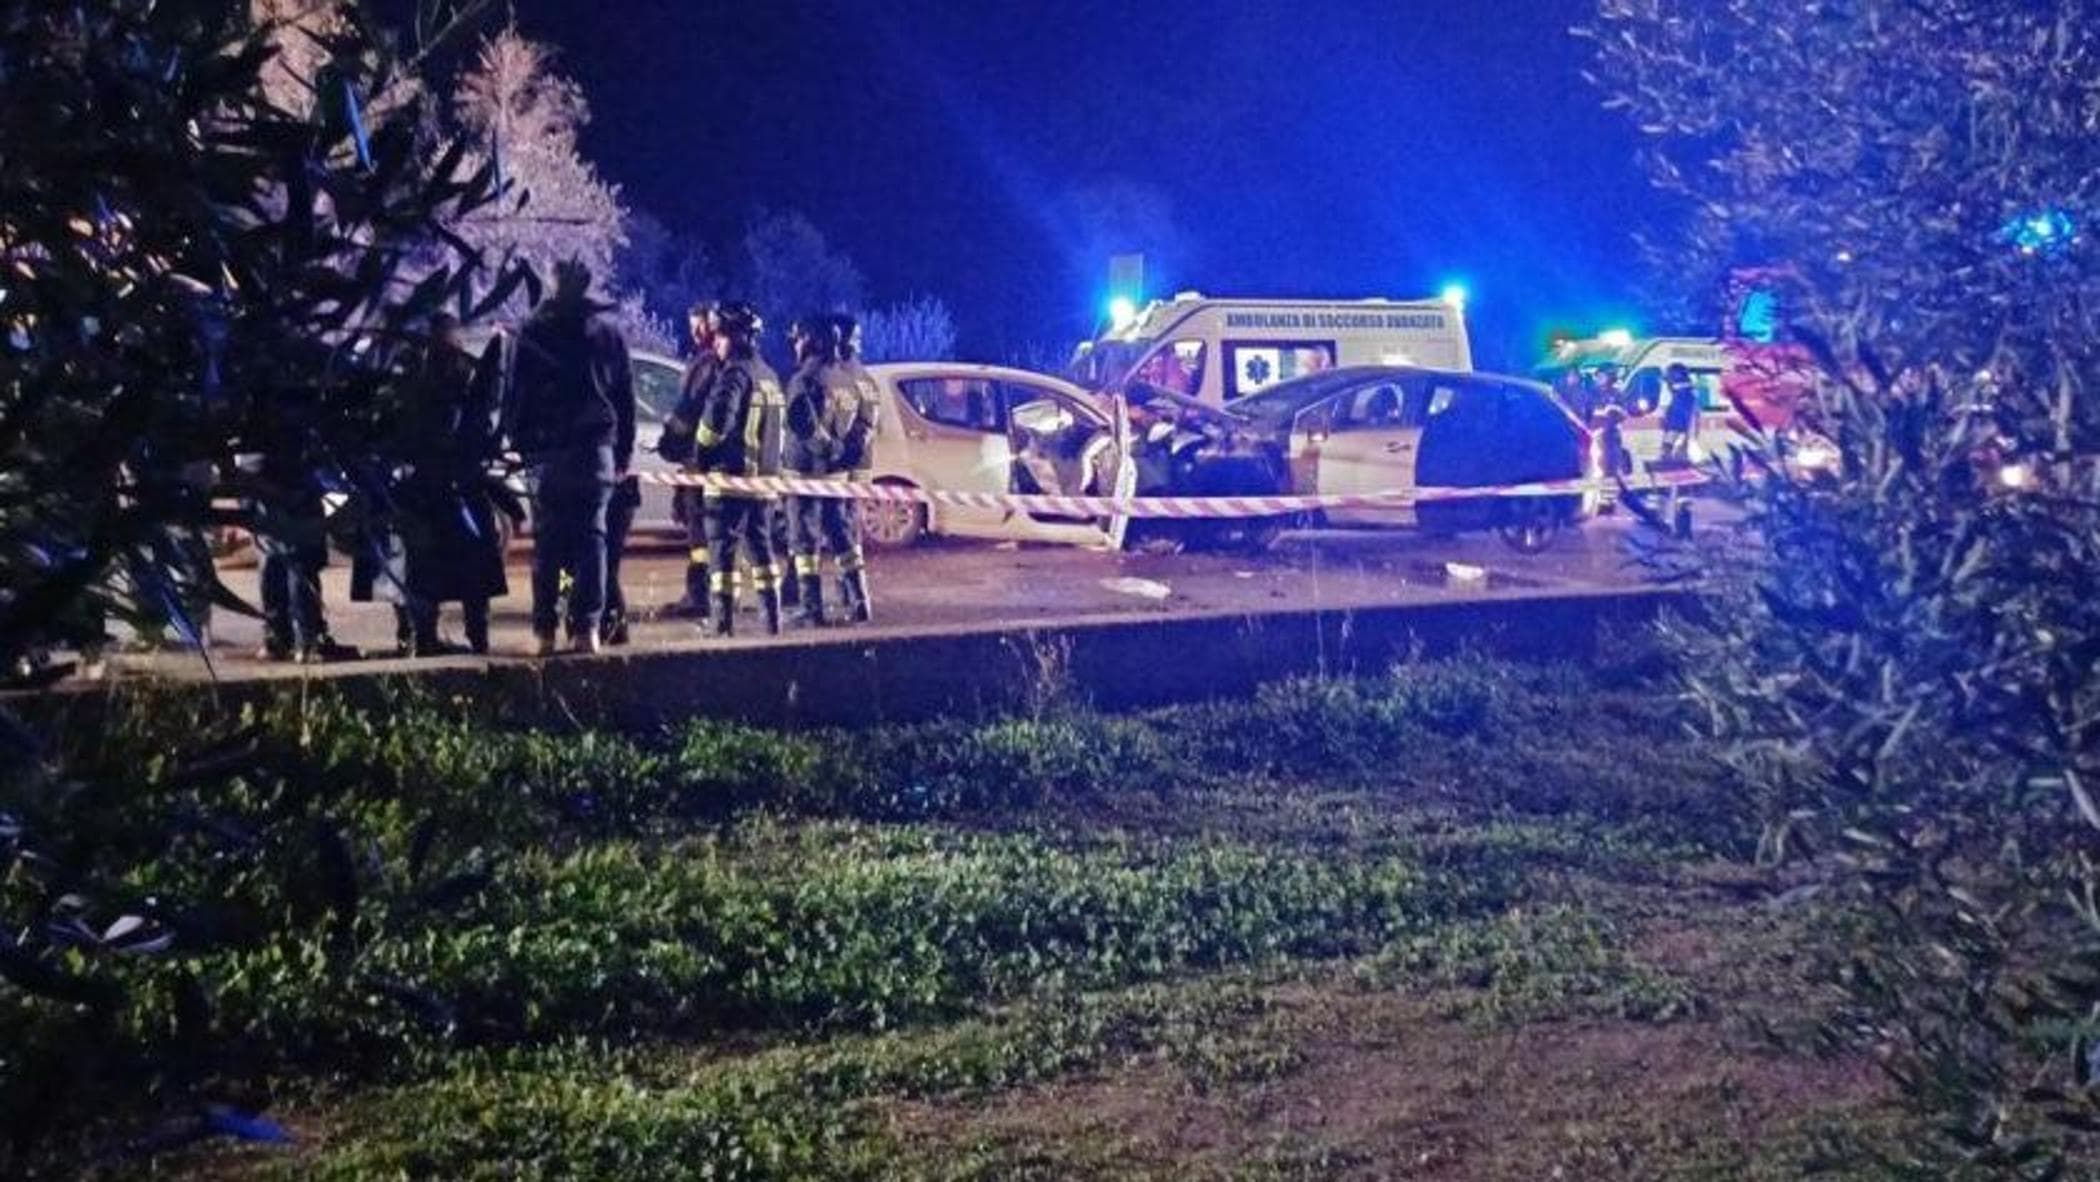 Un grave incidente stradale sulla Trani-Corato ha provocato la morte di due persone e il ferimento di altre tre, tra cui due bambini. Le forze dell'ordine sono al lavoro per ricostruire la dinamica dell'incidente.